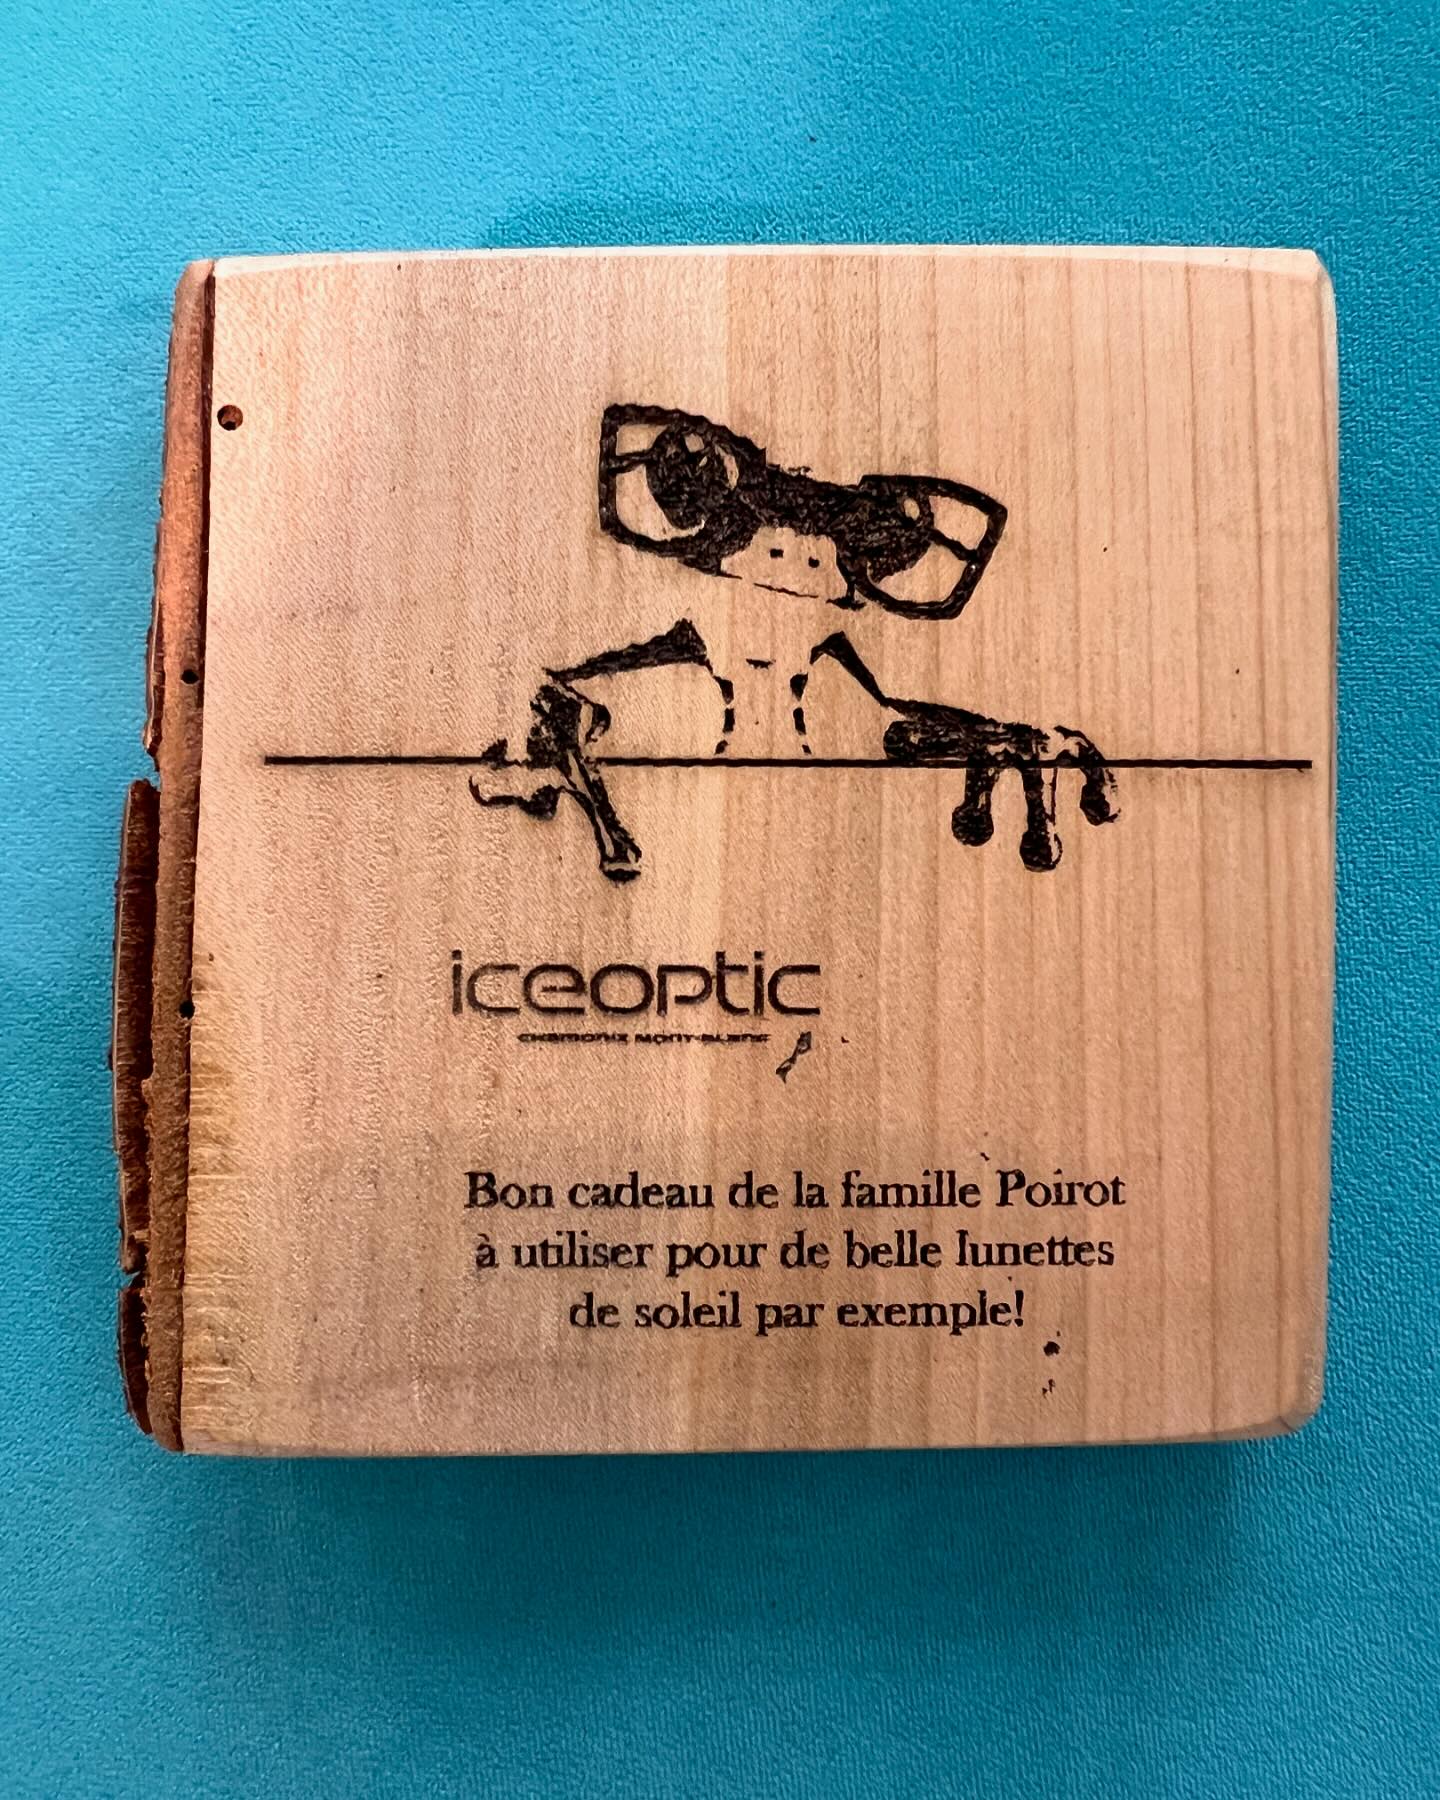 Voici une idée originale pour offrir une paire de lunette.
Tout le talent de Christophe.
@charlet.montant 
.
#optiquechaussinchamonix #opticiens #ideecadeau #cadeau #bondachat #chamonix #optic #optician #artisan